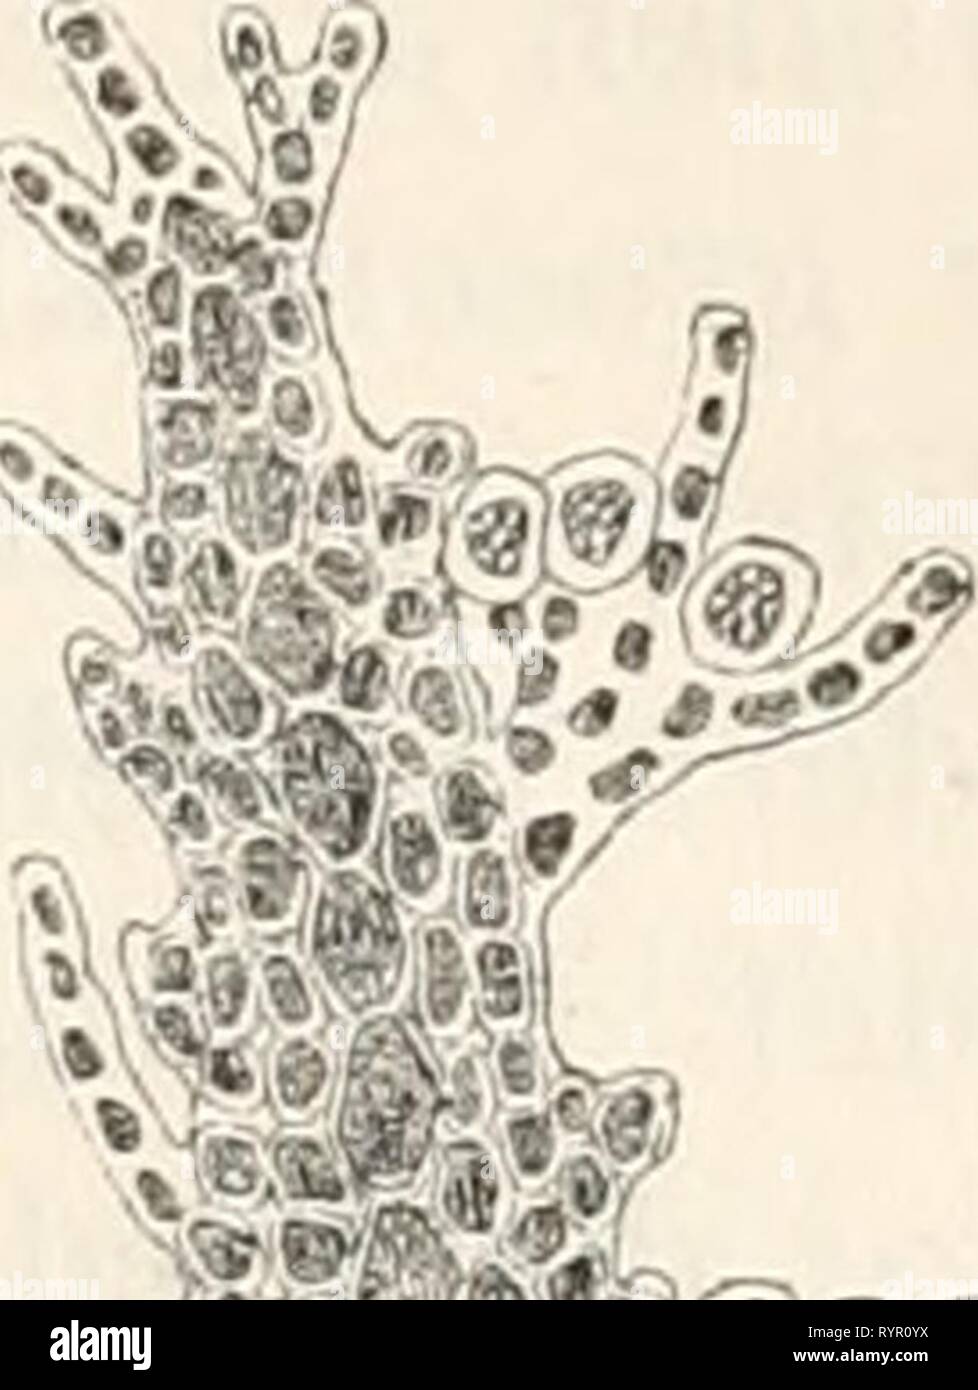 Dr L Rabenhorst's Kryptogamen-Flora von Dr. L. Rabenhorst's Kryptogamen-Flora von Deutschland, Oesterreich und der Schweiz . drlrabenhorstskr02rabe Year: 1885  ^v ^Â»&lt;ftn;v(i!    ^. â .Â»? Ptilota elegans Bonnern, a Eine Fieder letzter Ordnung. Vergr. ca. lÃ¼O. Ptilota plumosa (L.) Ag. h Spitze eines Aestchens mit Cystocarpien innerhalb der HÃ¼llÃ¤stchen. Vergr. ca. 100. c Eine Fieder letzter Ordnung mit Tetrasporangien. Vergr. ca, 100. d Querschnitt durch den unteren Theil des StÃ¤mmchens. Vergr. ca. 100. (Nach KÃ¼tzing.) 1. Pt. eleg'ans Bonnern. Fig. 34 a. Thallus 5â15 cm hoch, flach-zwei Stock Photo